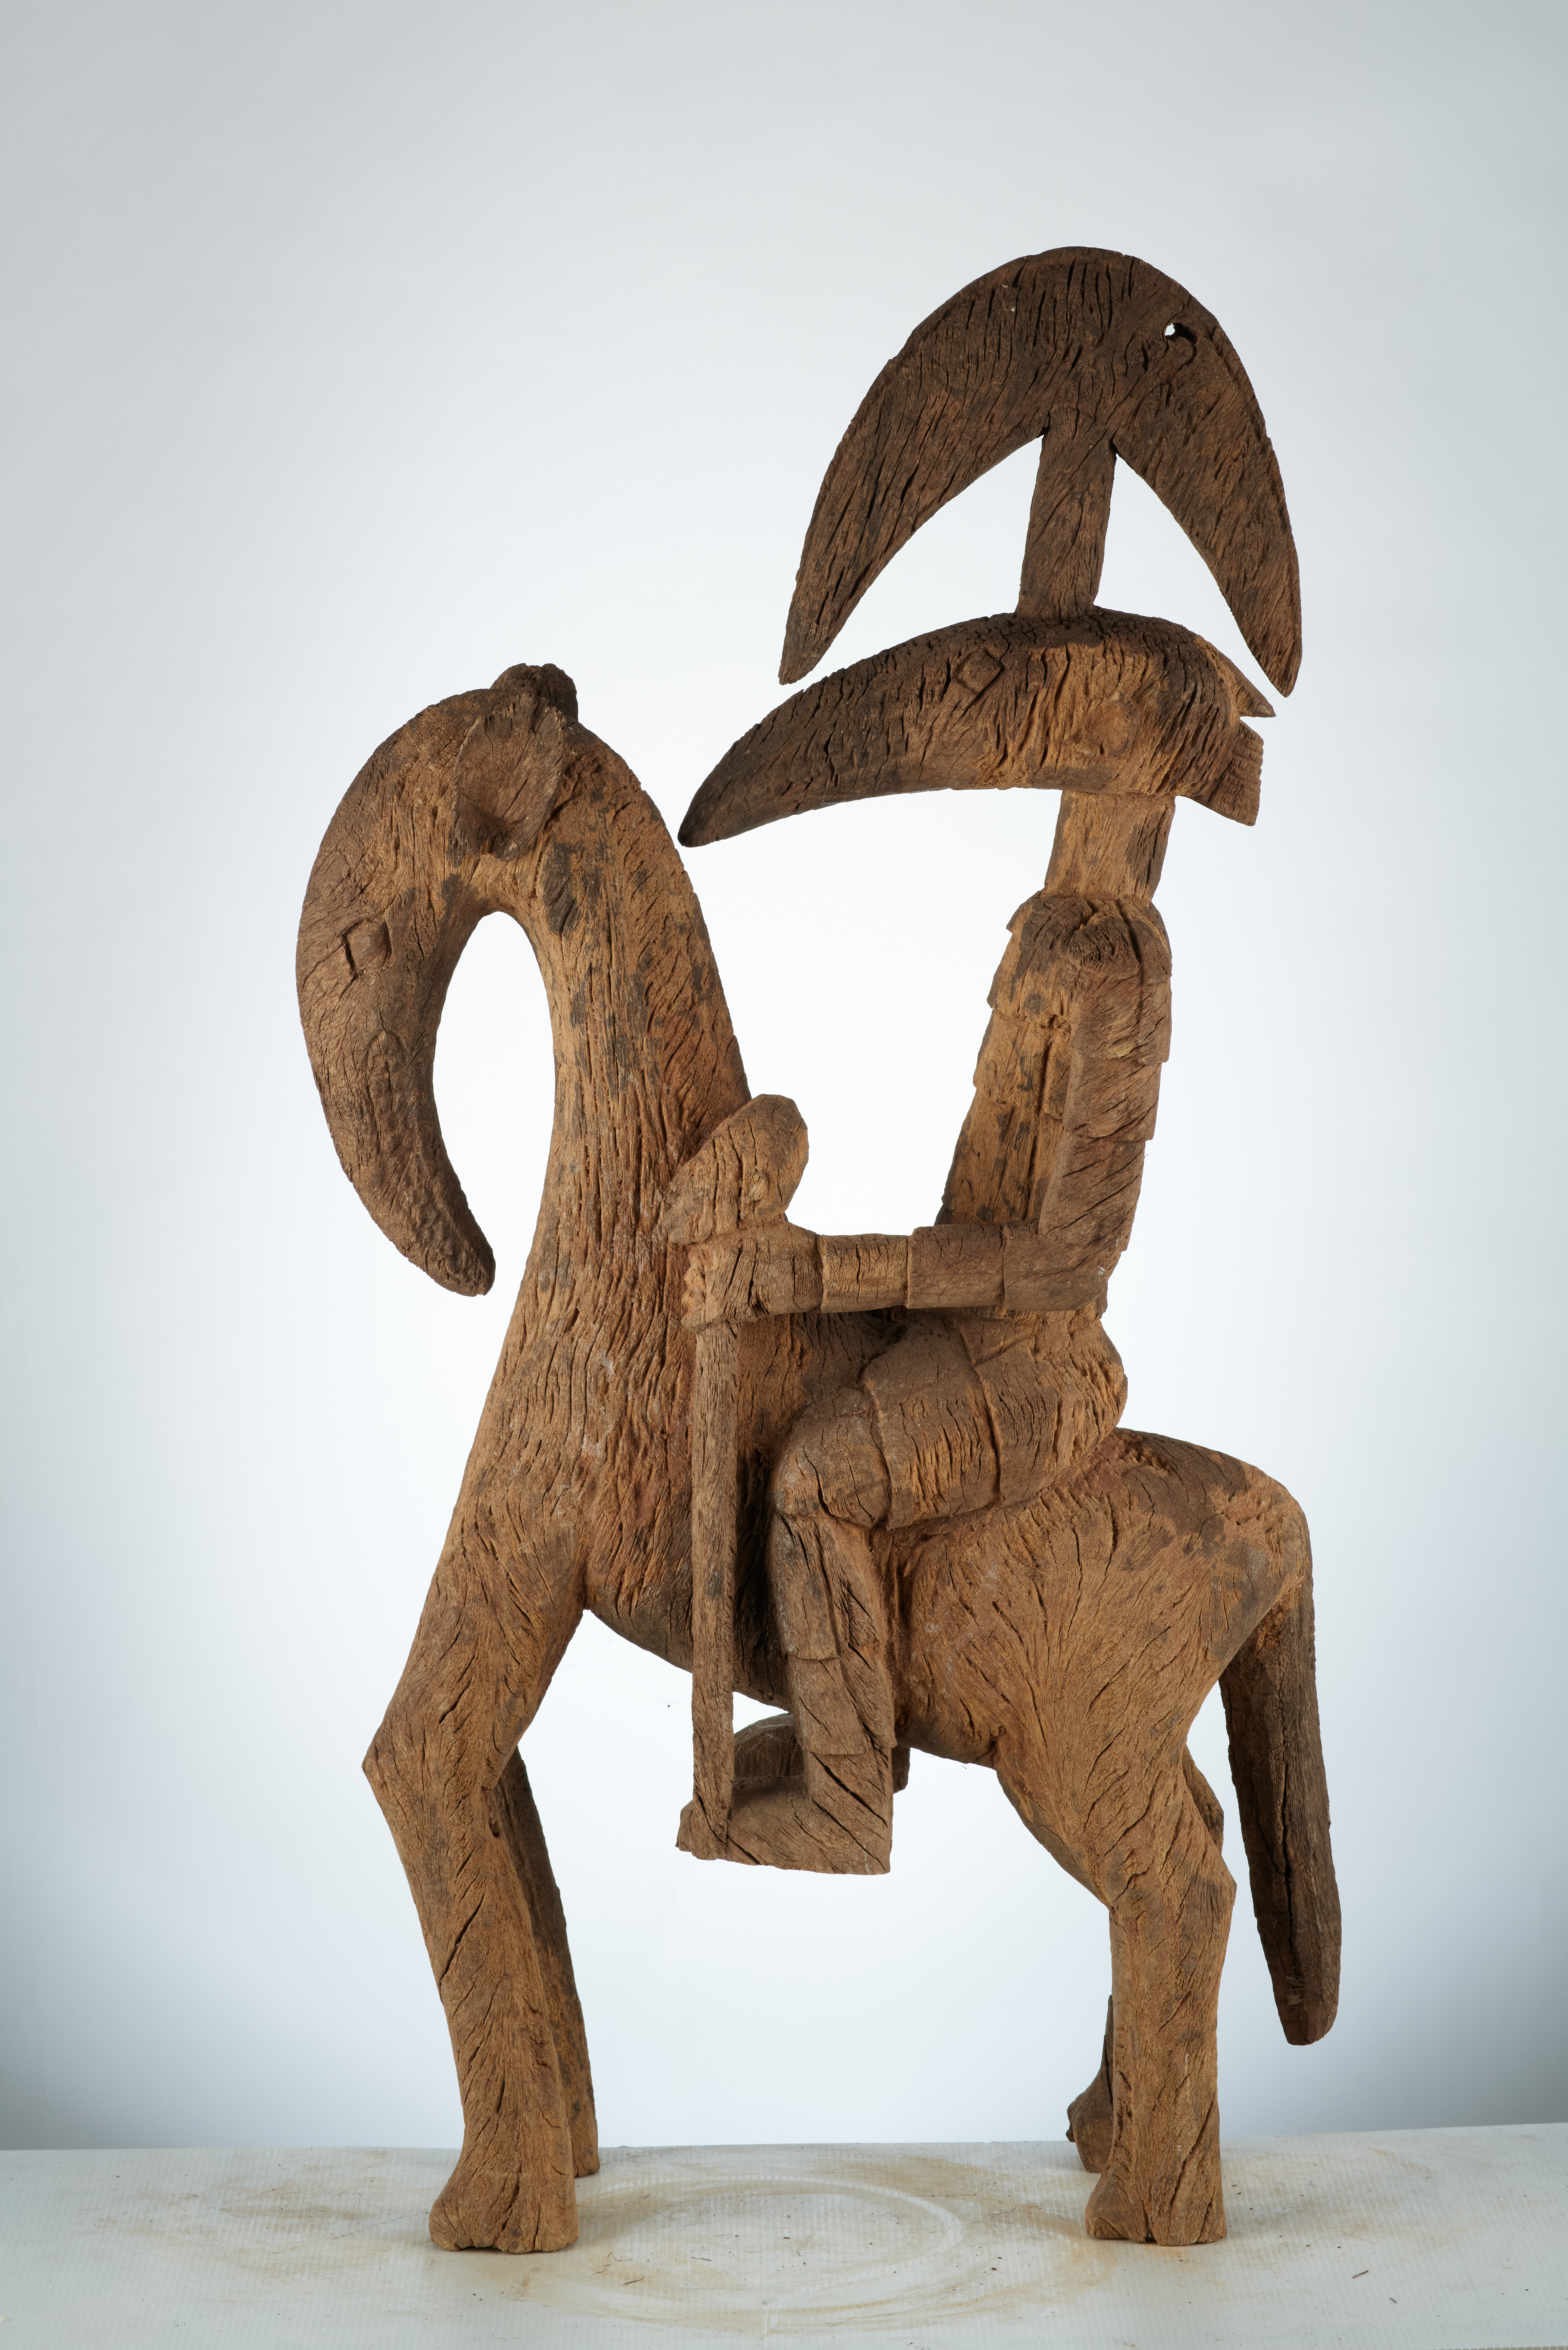 KORO (cavalier ), d`afrique : Nigéria, statuette KORO (cavalier ), masque ancien africain KORO (cavalier ), art du Nigéria - Art Africain, collection privées Belgique. Statue africaine de la tribu des KORO (cavalier ), provenant du Nigéria, 1908:Statue équestre Koro.Guerrier à cheval avec une coiffe en demi lune,le visage allongé en pointe.Il tient dans sa main gauche un bâton avec une tête (col.Simon du chastel de la Howarderie). art,culture,masque,statue,statuette,pot,ivoire,exposition,expo,masque original,masques,statues,statuettes,pots,expositions,expo,masques originaux,collectionneur d`art,art africain,culture africaine,masque africain,statue africaine,statuette africaine,pot africain,ivoire africain,exposition africain,expo africain,masque origina africainl,masques africains,statues africaines,statuettes africaines,pots africains,expositions africaines,expo africaines,masques originaux  africains,collectionneur d`art africain